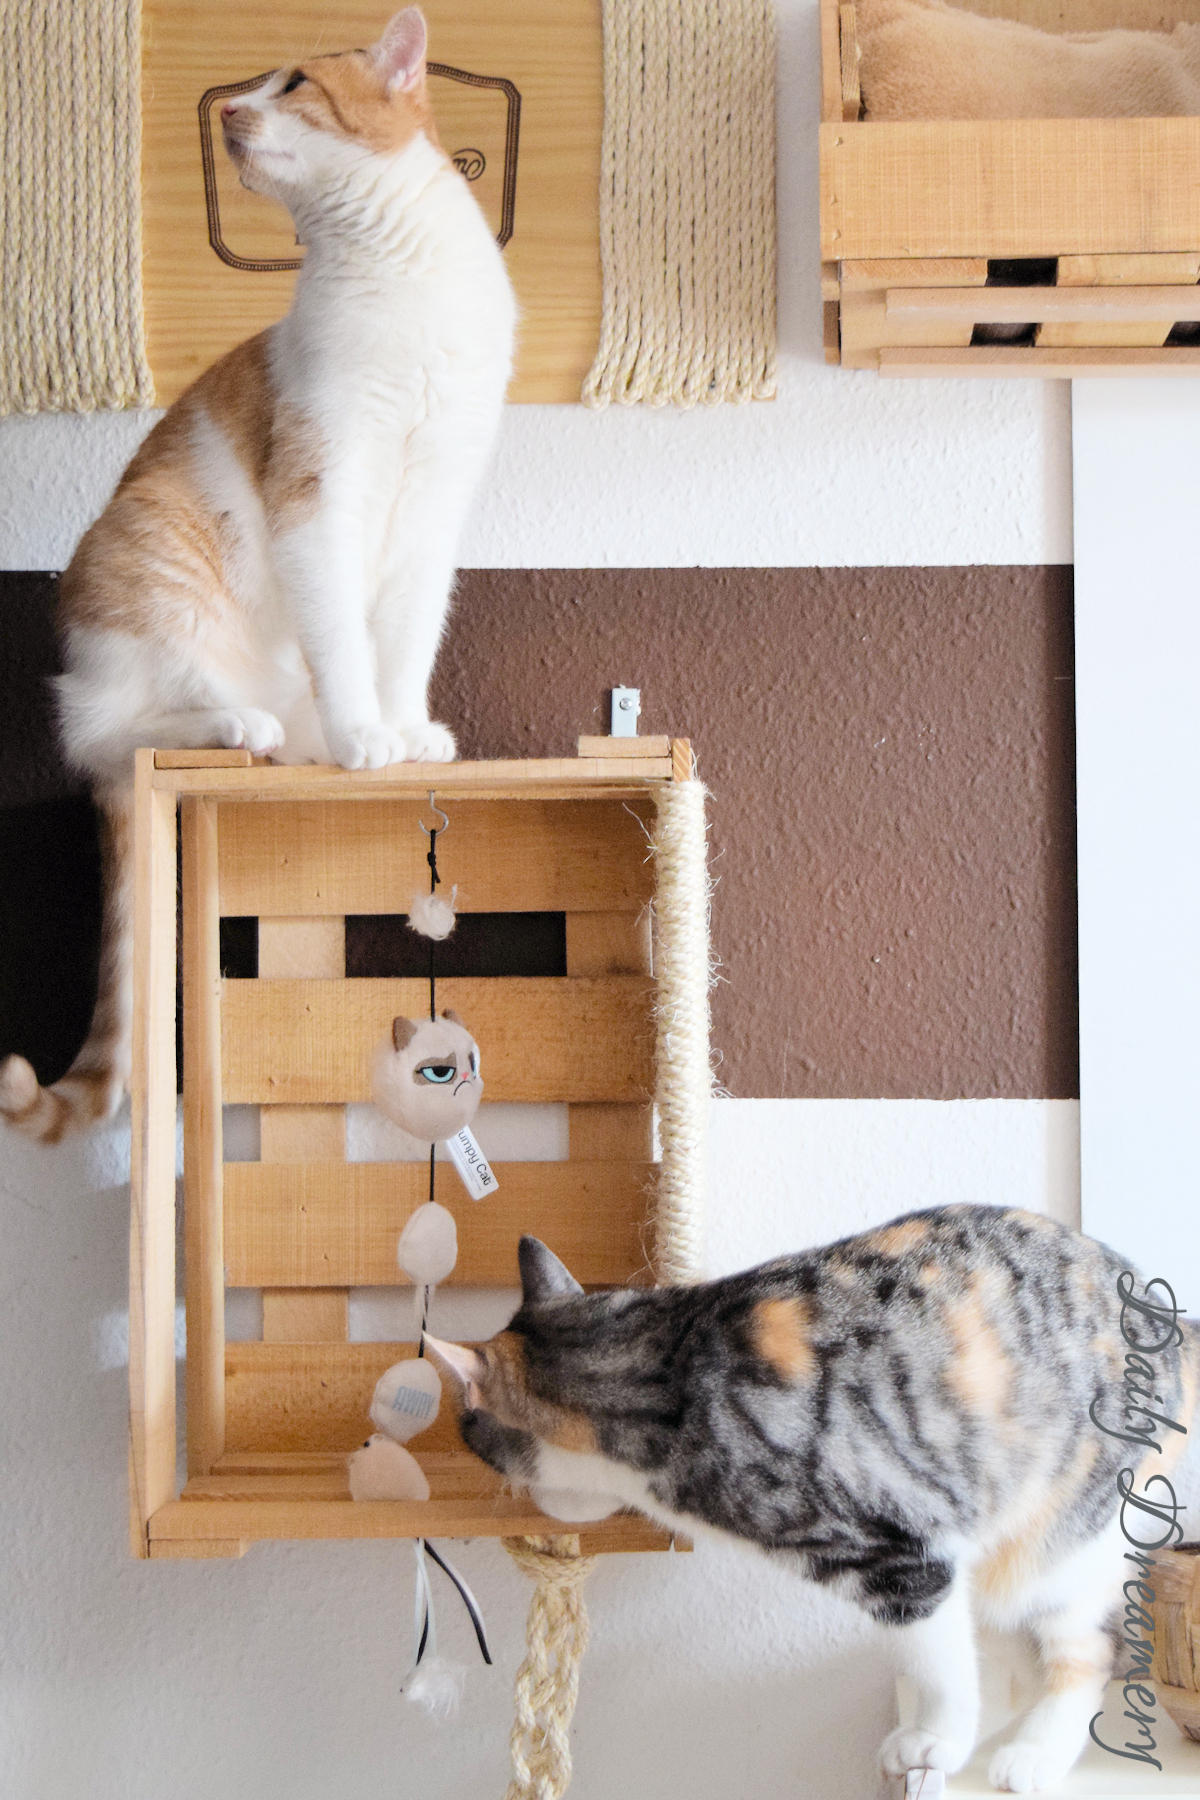 DIY-Kletterwand für Katzen ganz einfach aus alten Weinkisten bauen - perfekt für Wohnungskatzen #diy #katzen #katzenmöbel